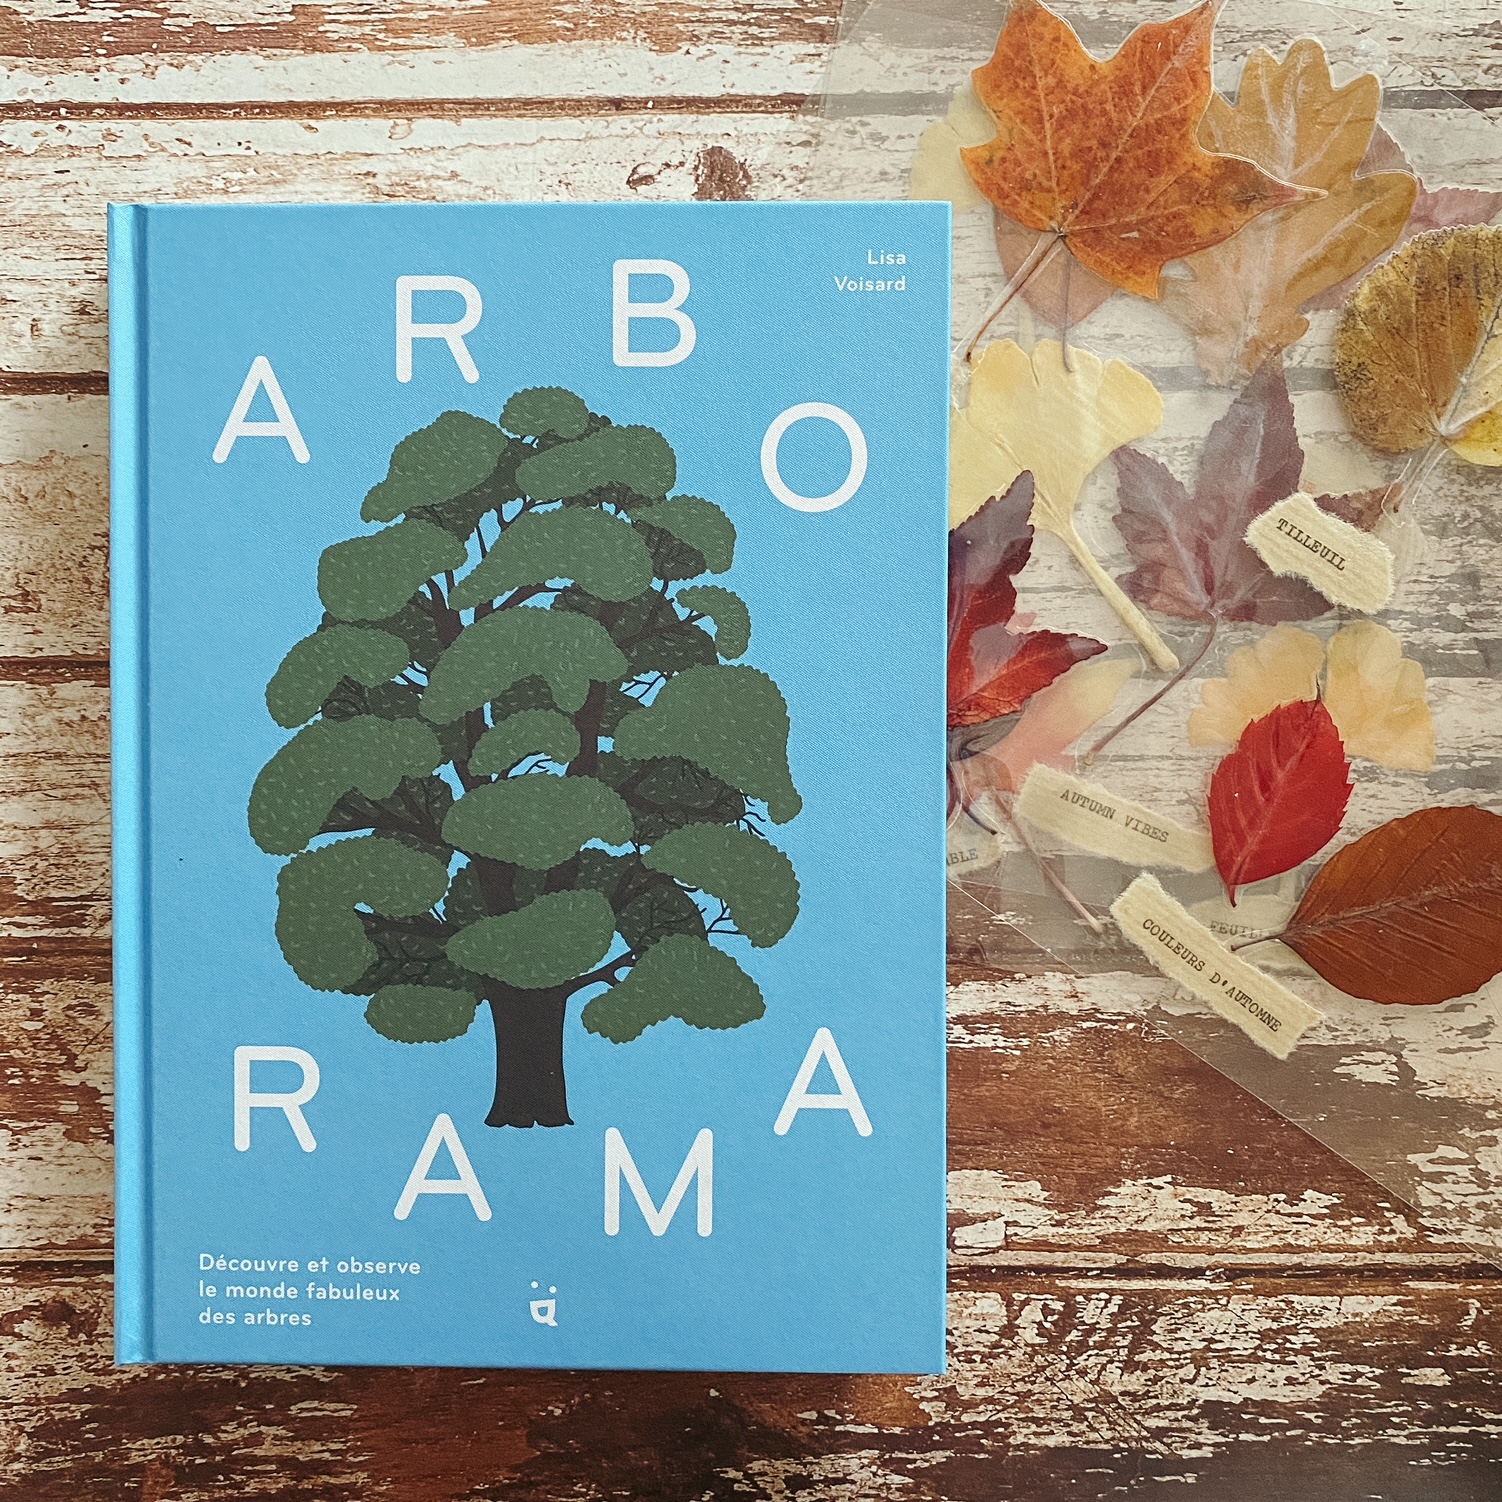 Arborama, de Lisa Voisard : reconnaître les arbres